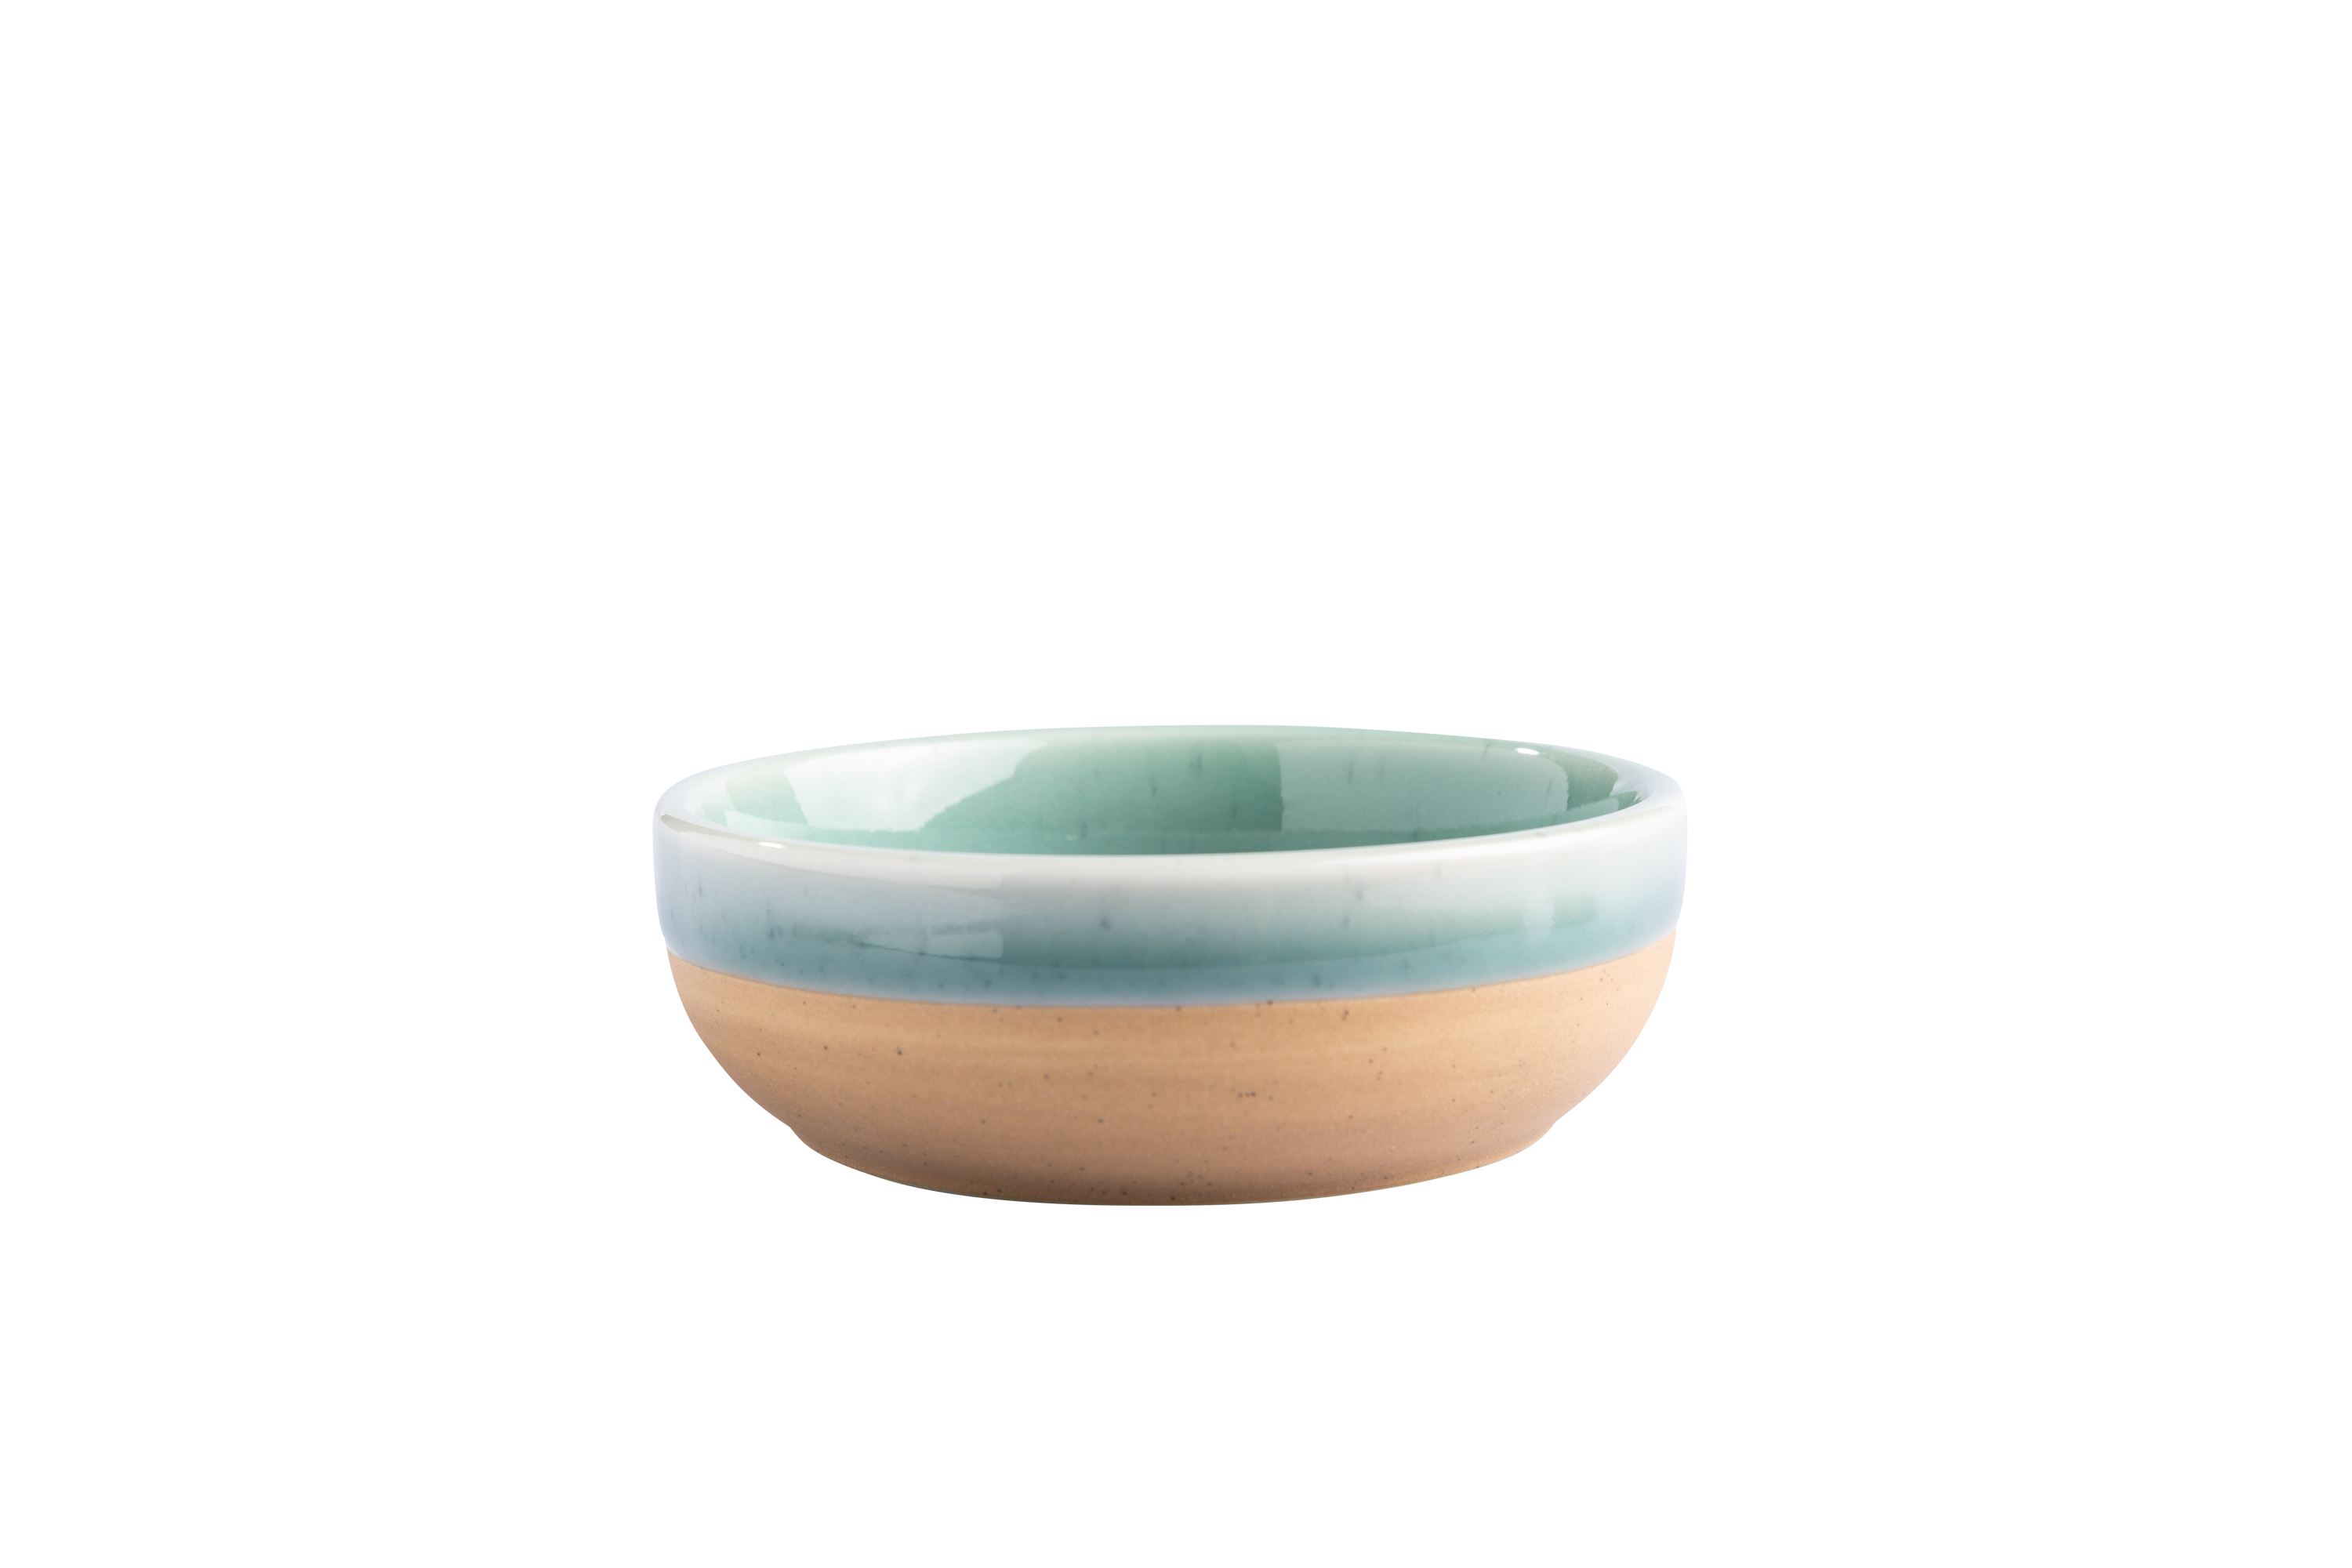 Eine blau-beige Keramikschüssel